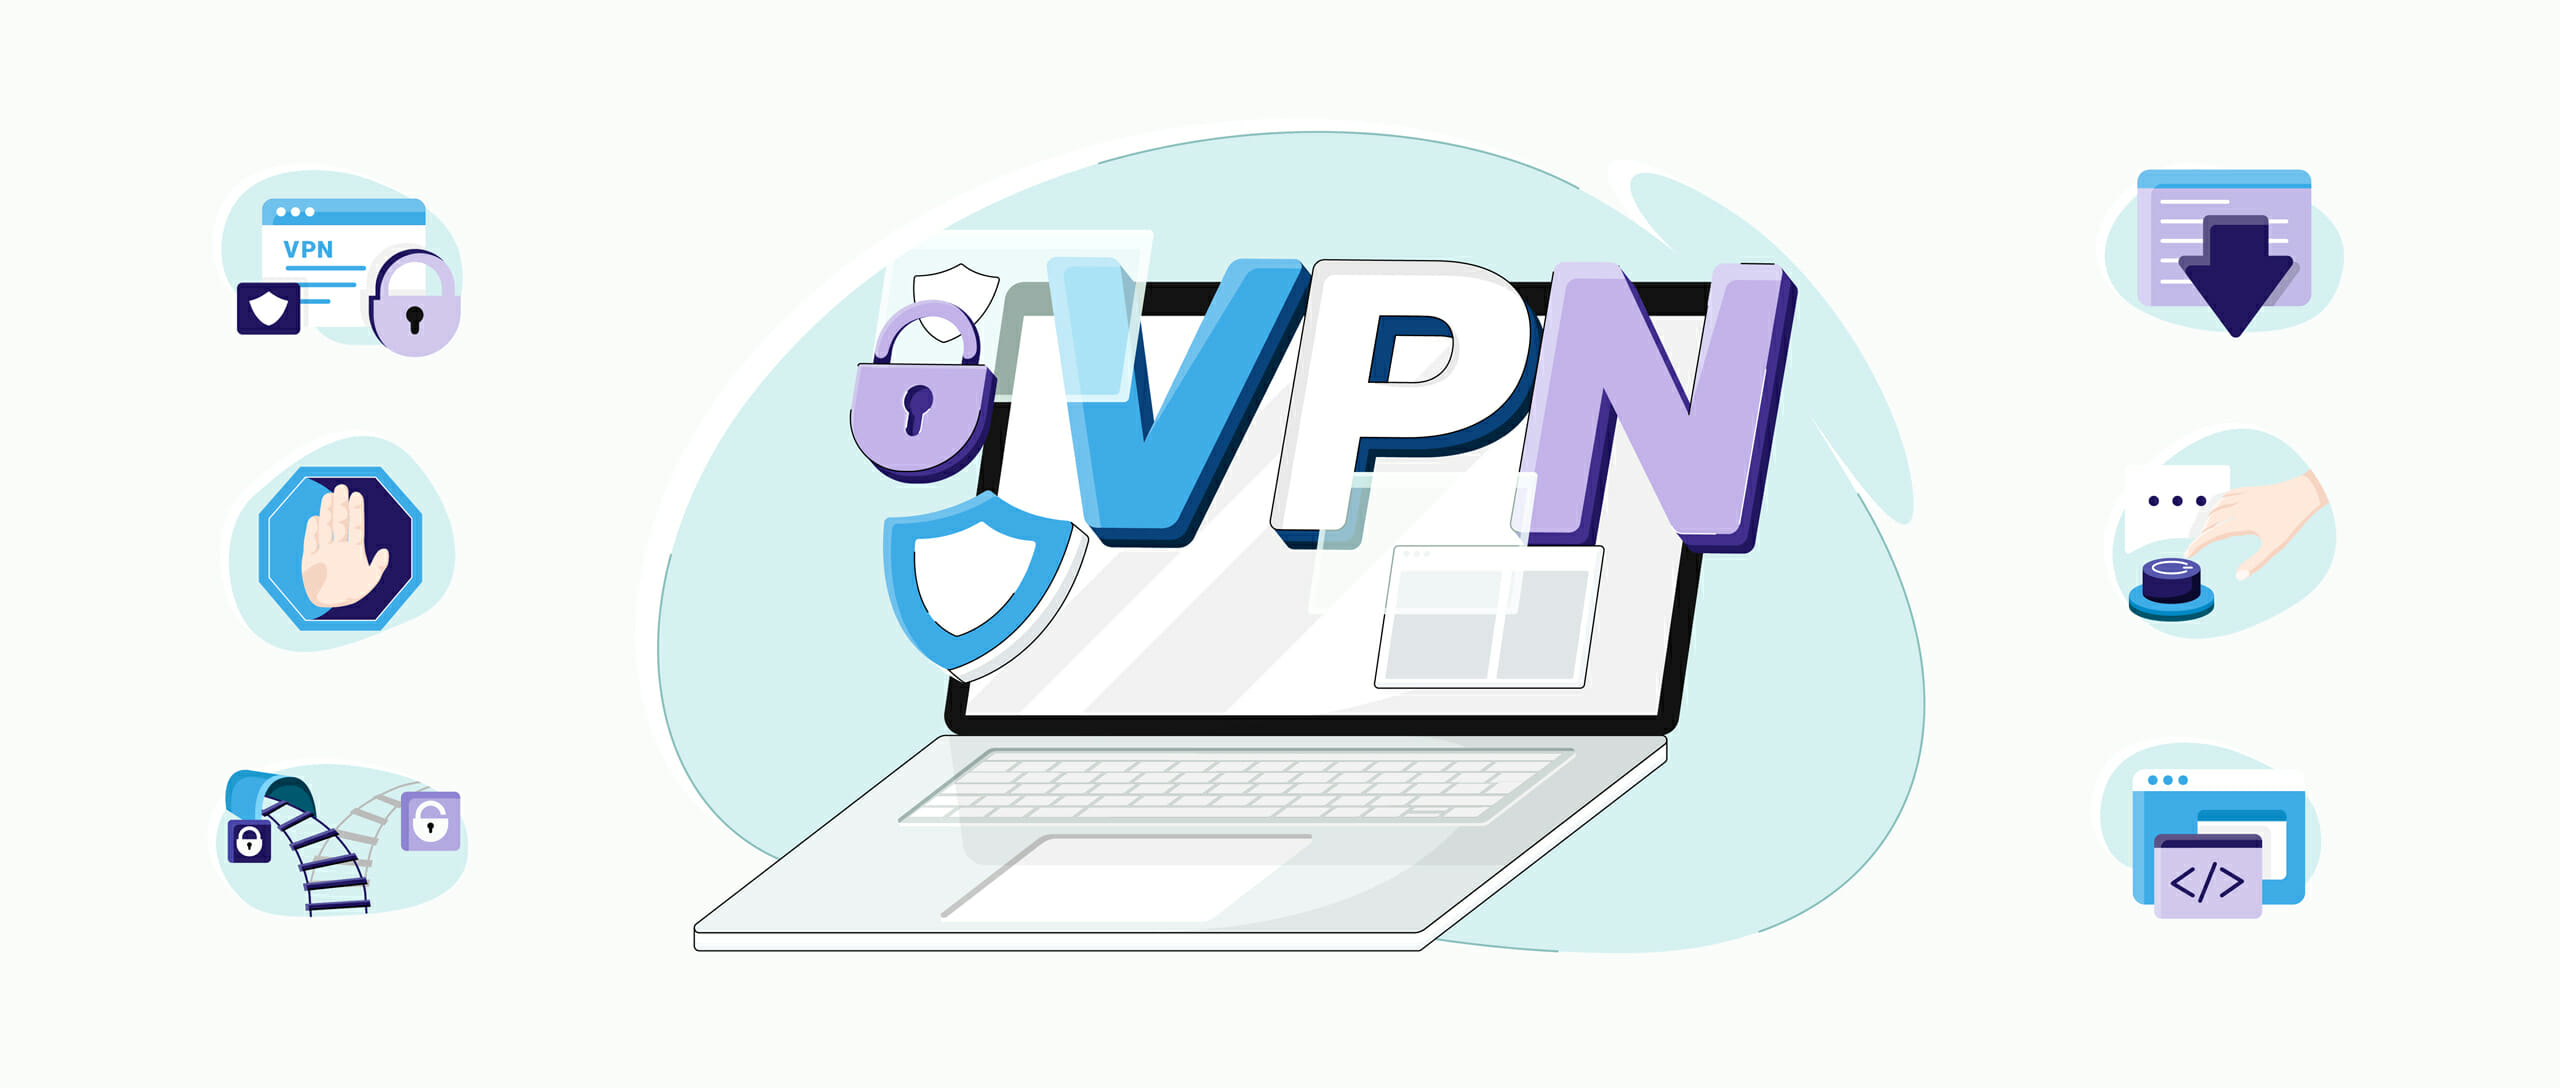 Eigenschappen die een VPN moet hebben